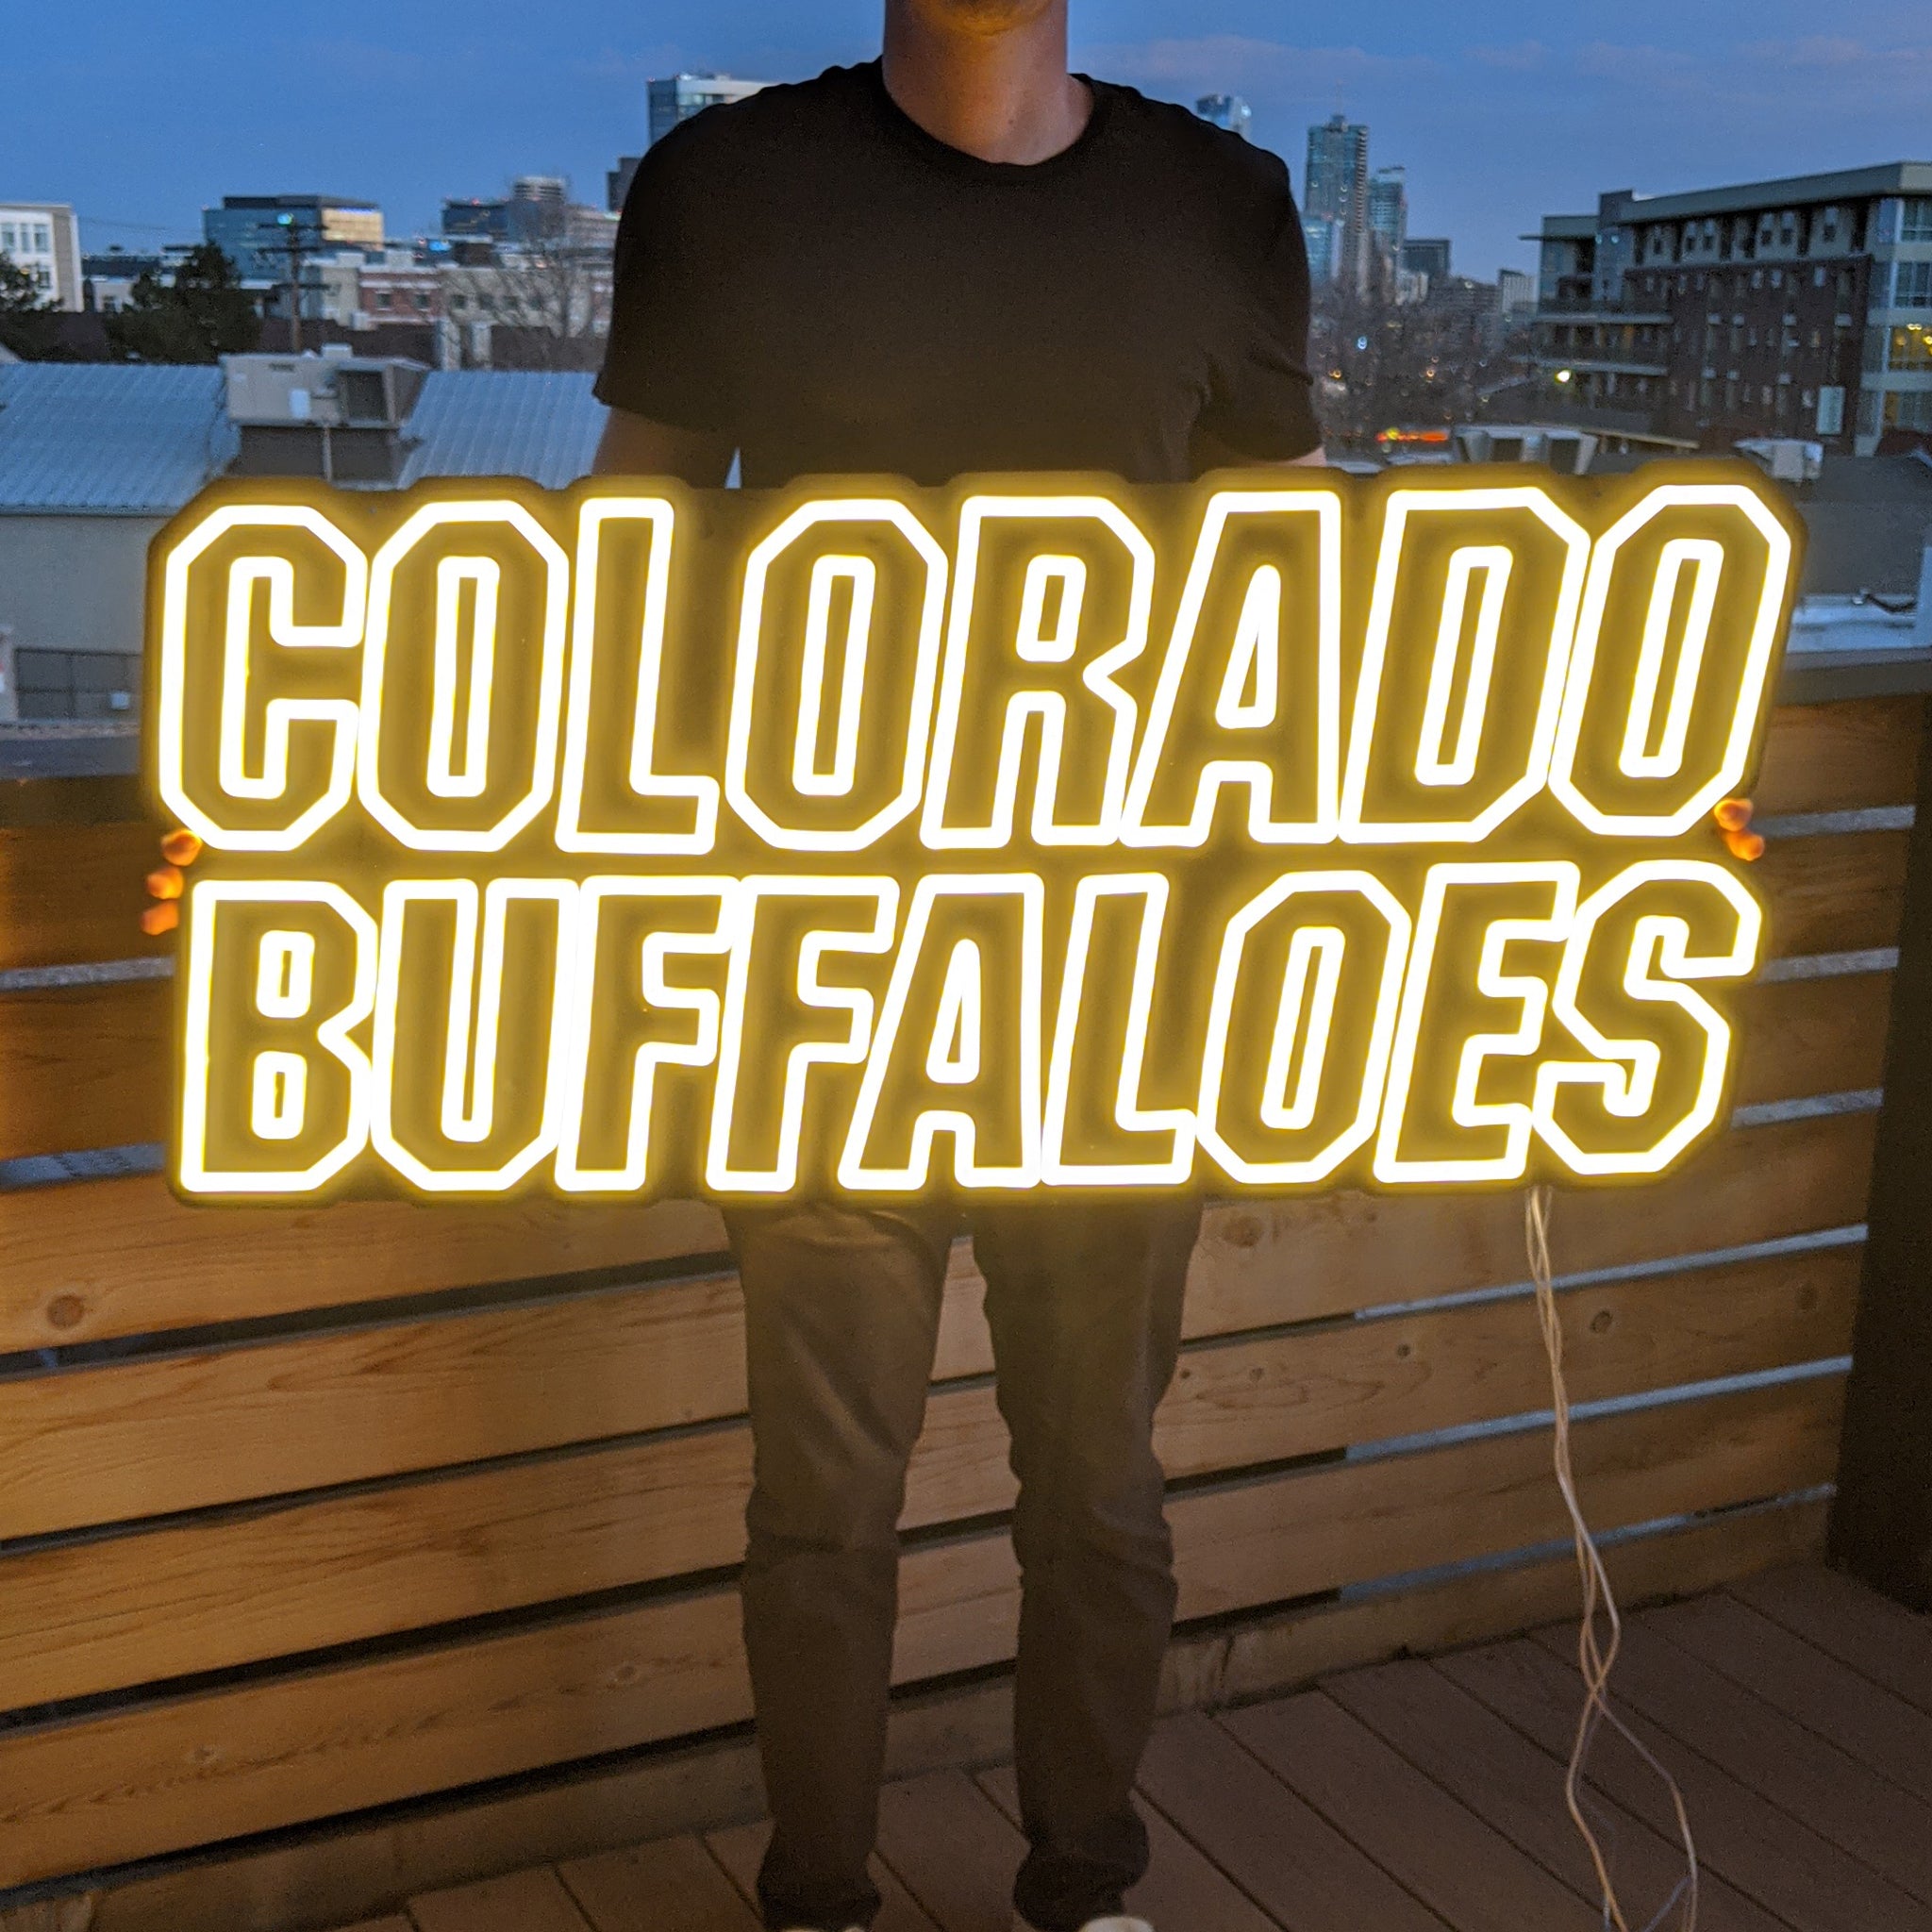 Colorado Buffaloes Neon Sign - Saturday Neon